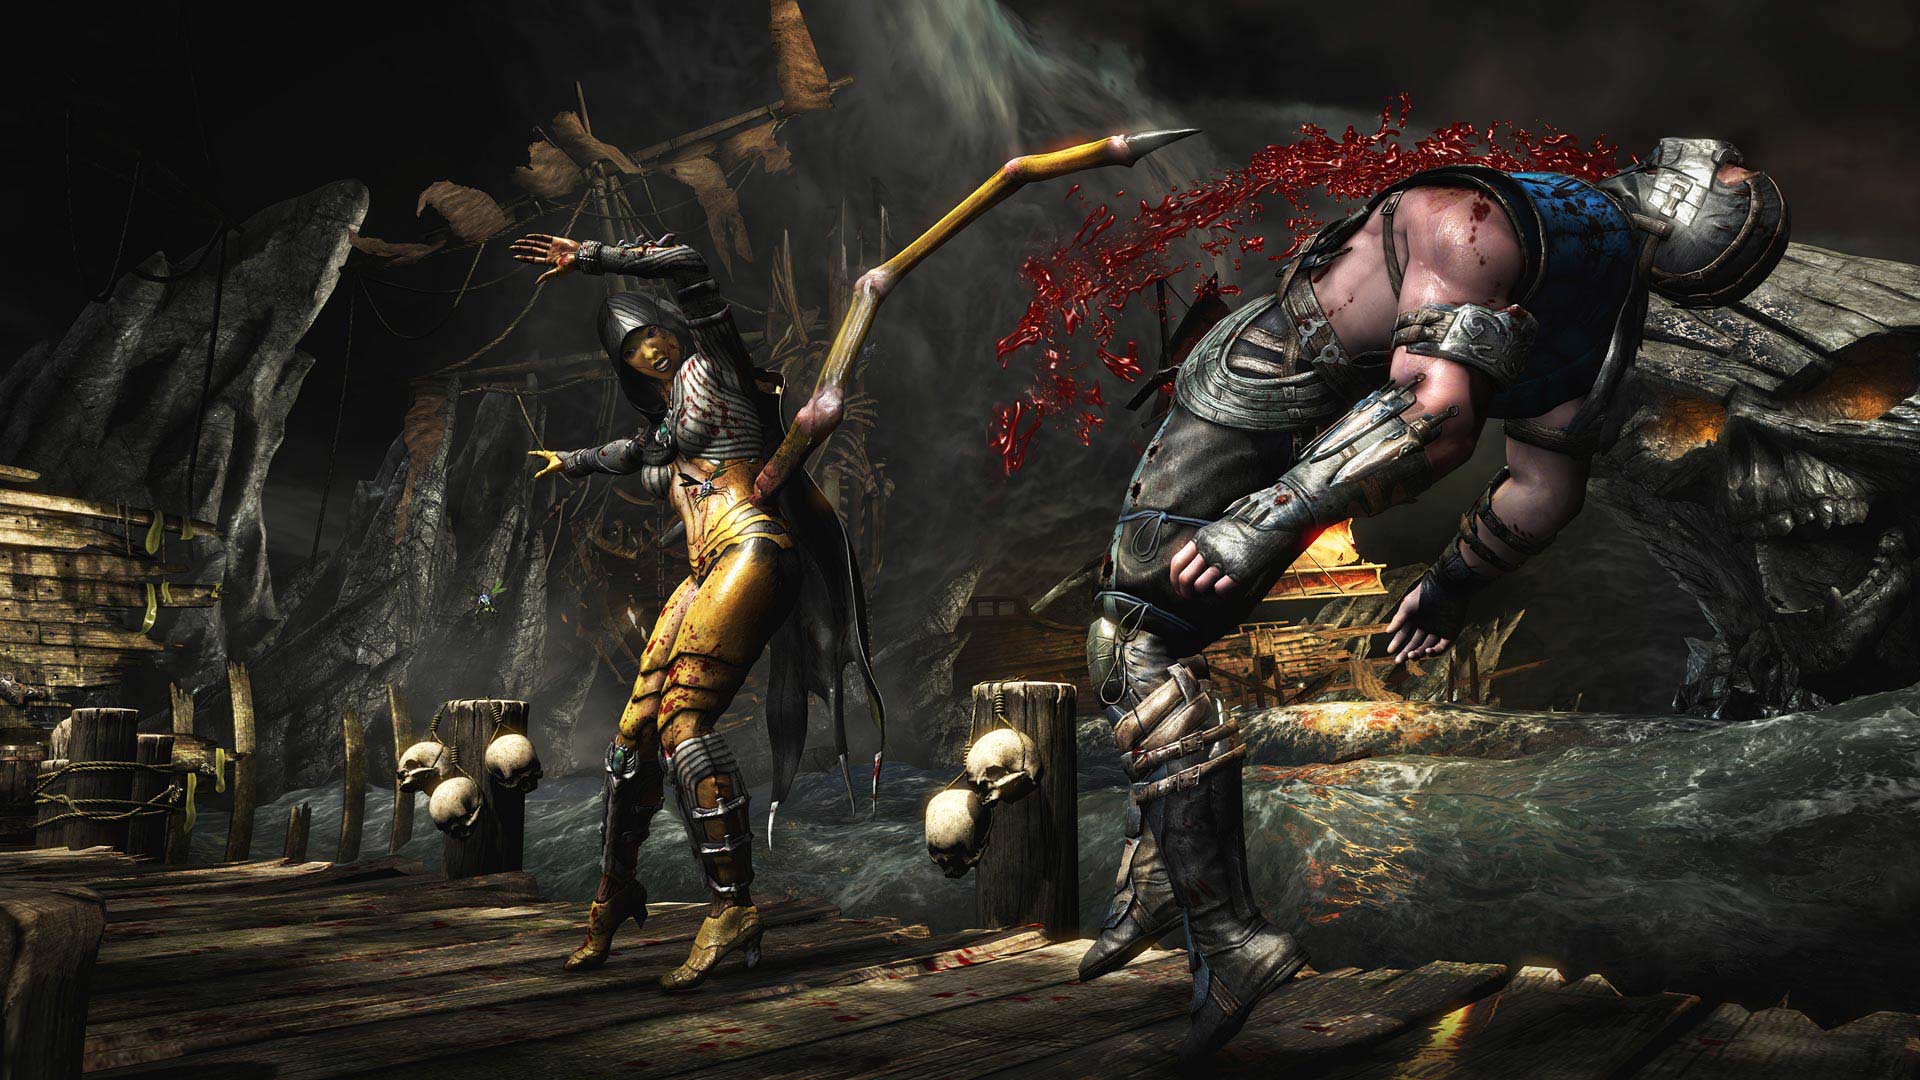 Mortal Kombat X (Jogo de 2015), Wiki Mortal Kombat brasil